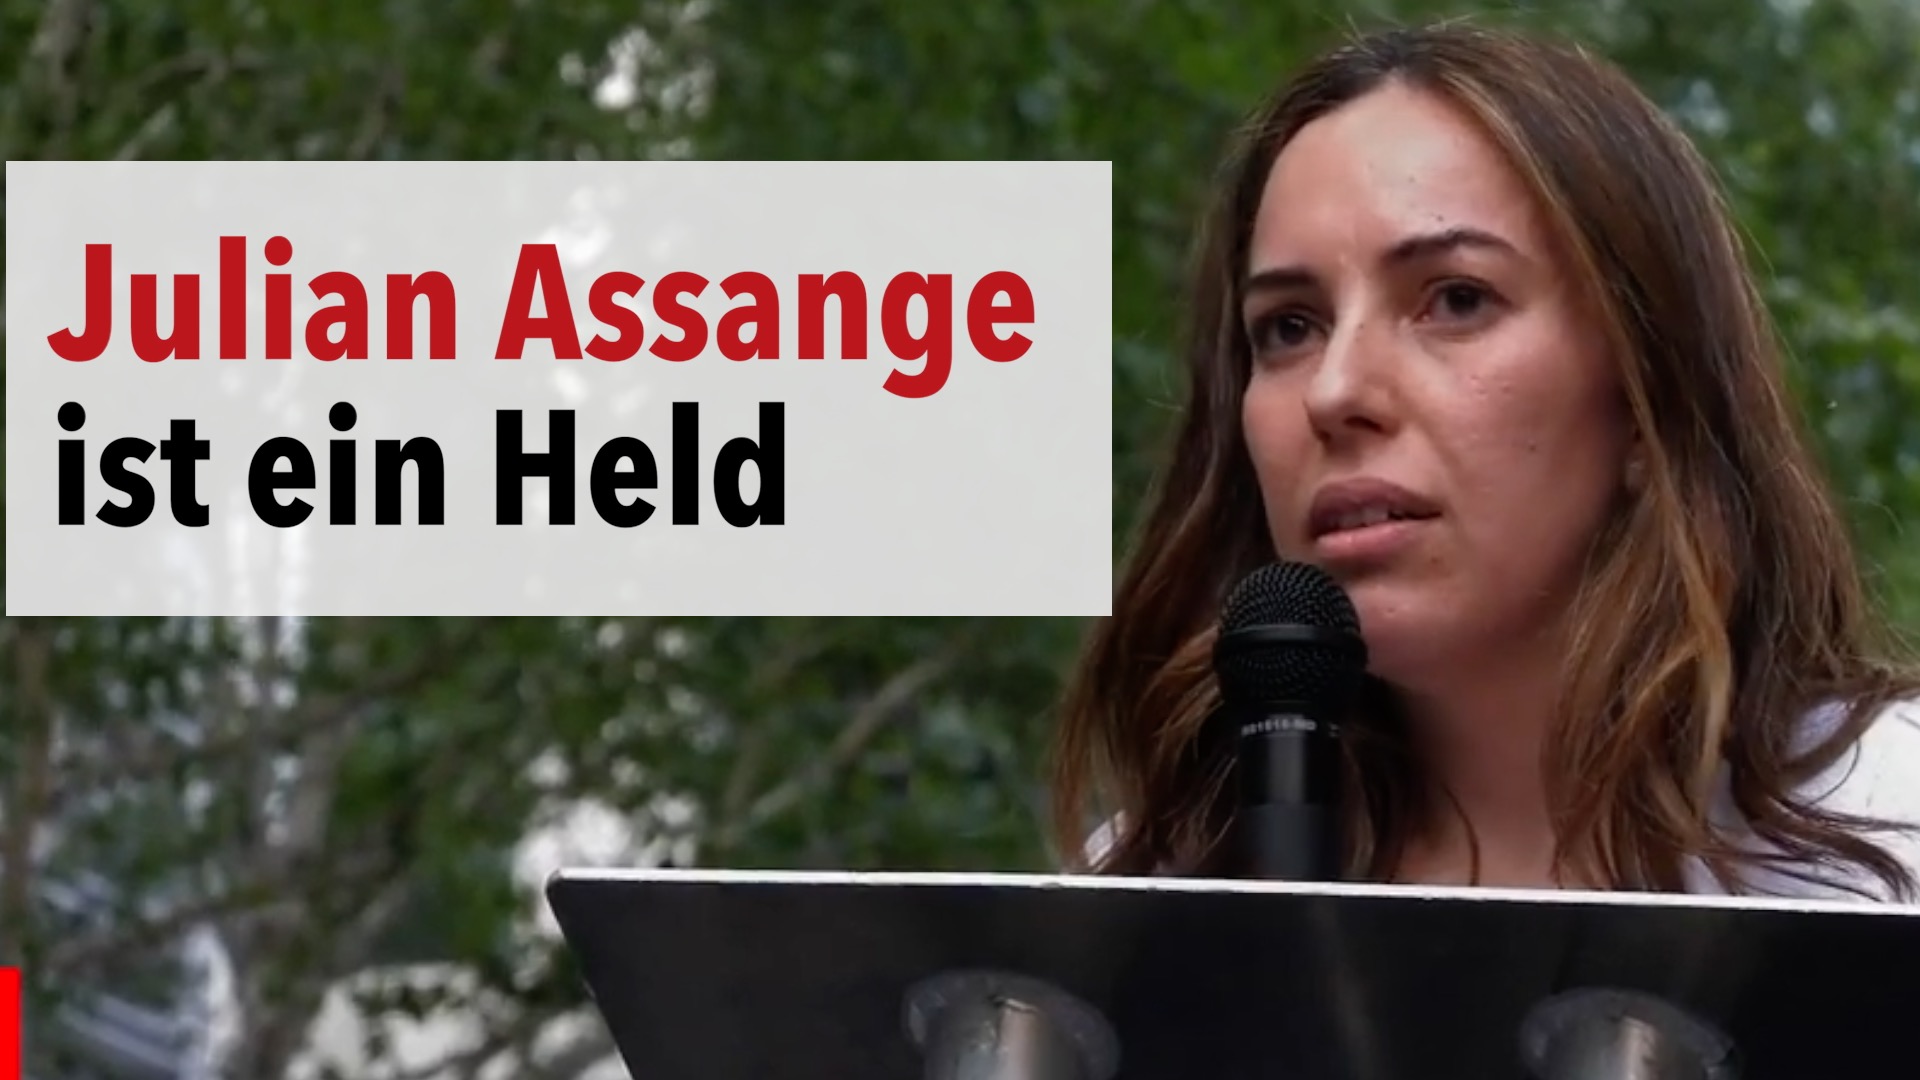 "Journalismus ist KEIN Verbrechen" - Demonstration für Assange in London